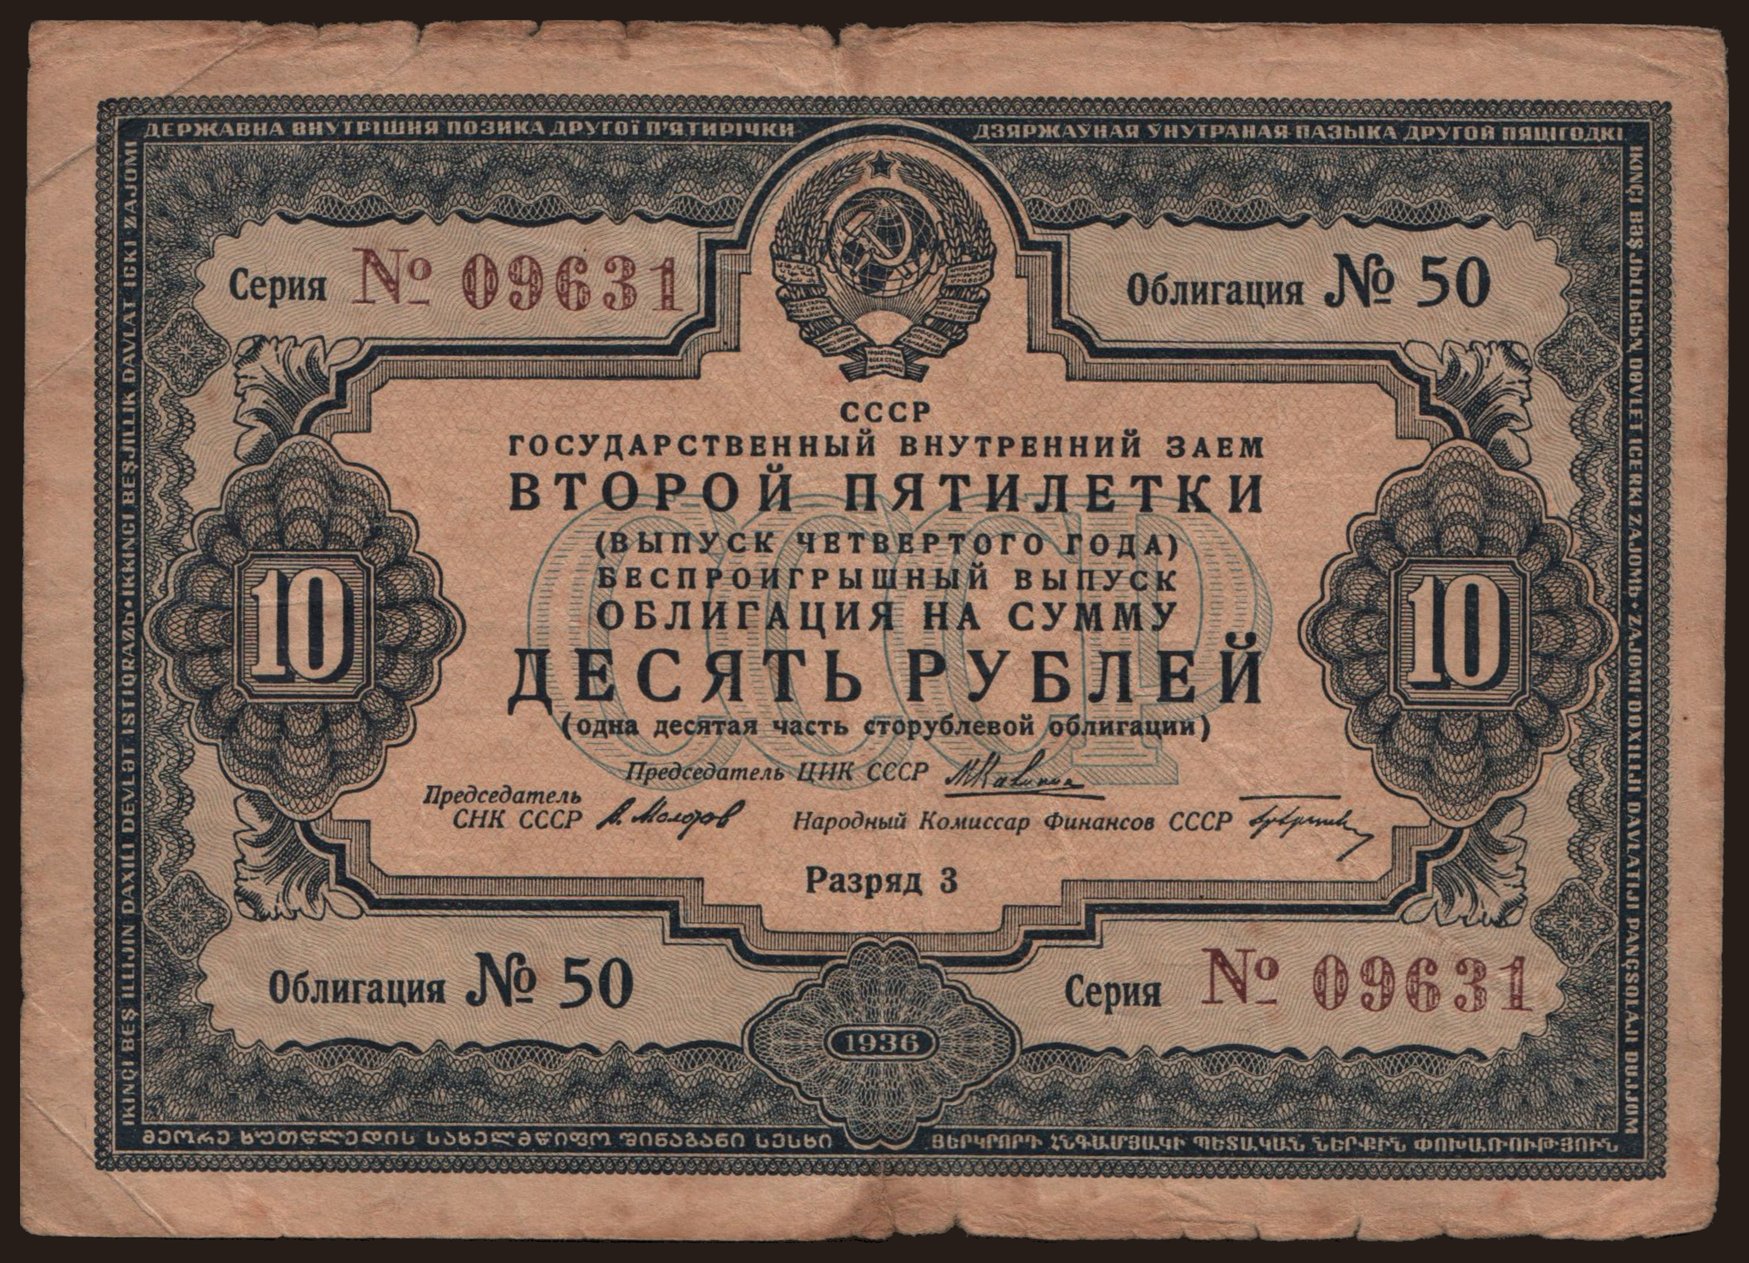 Gosudarstvennyj zaem, 10 rubel, 1936